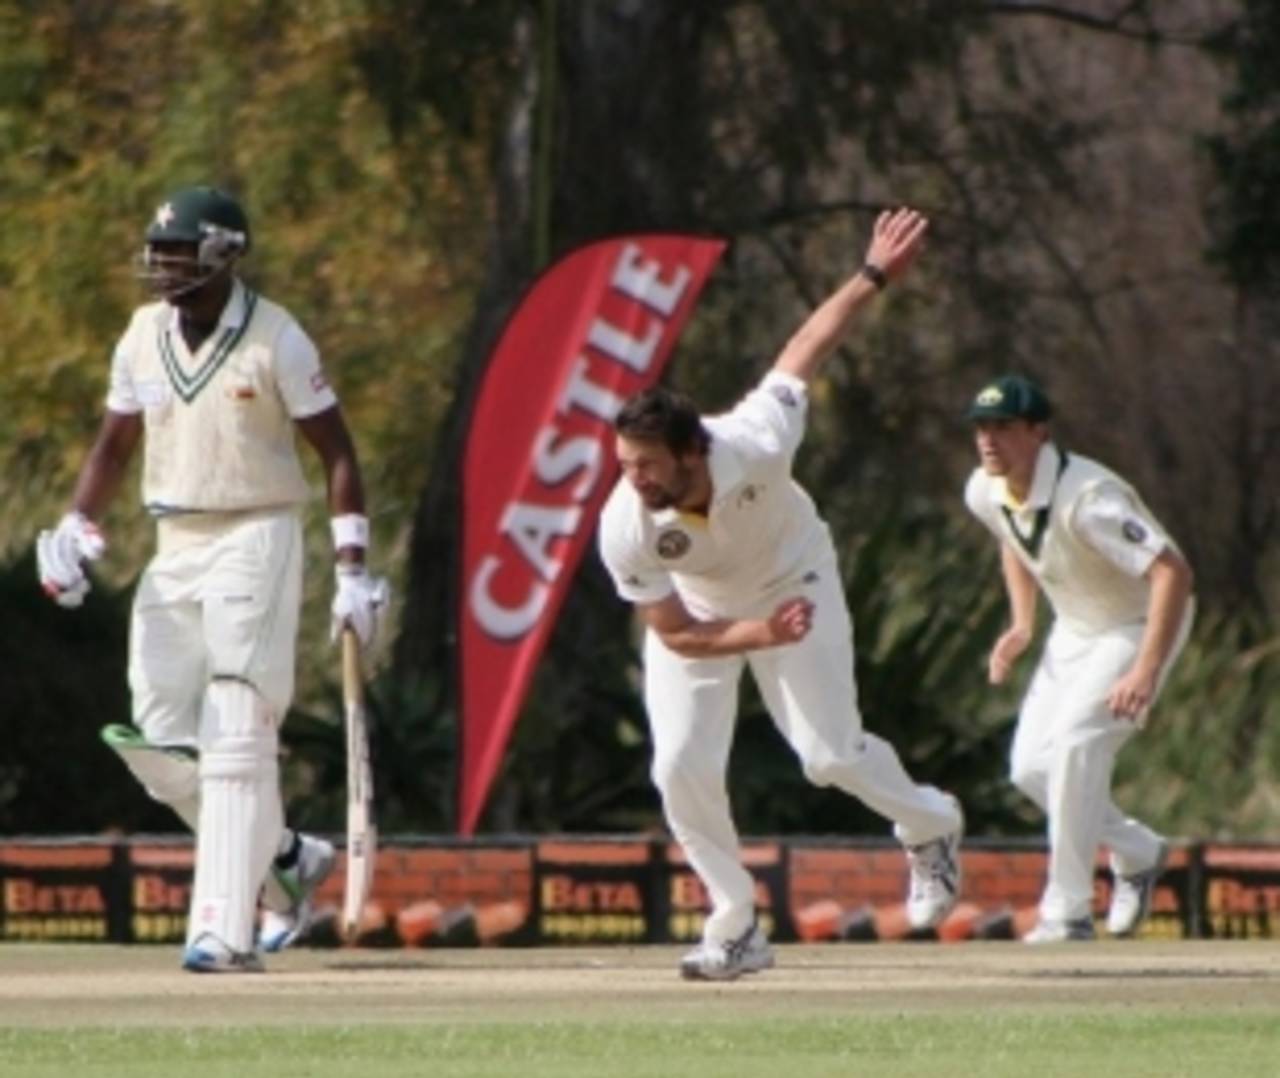 Ben Hilfenhaus gets another chance to revive his international career&nbsp;&nbsp;&bull;&nbsp;&nbsp;Zimbabwe Cricket